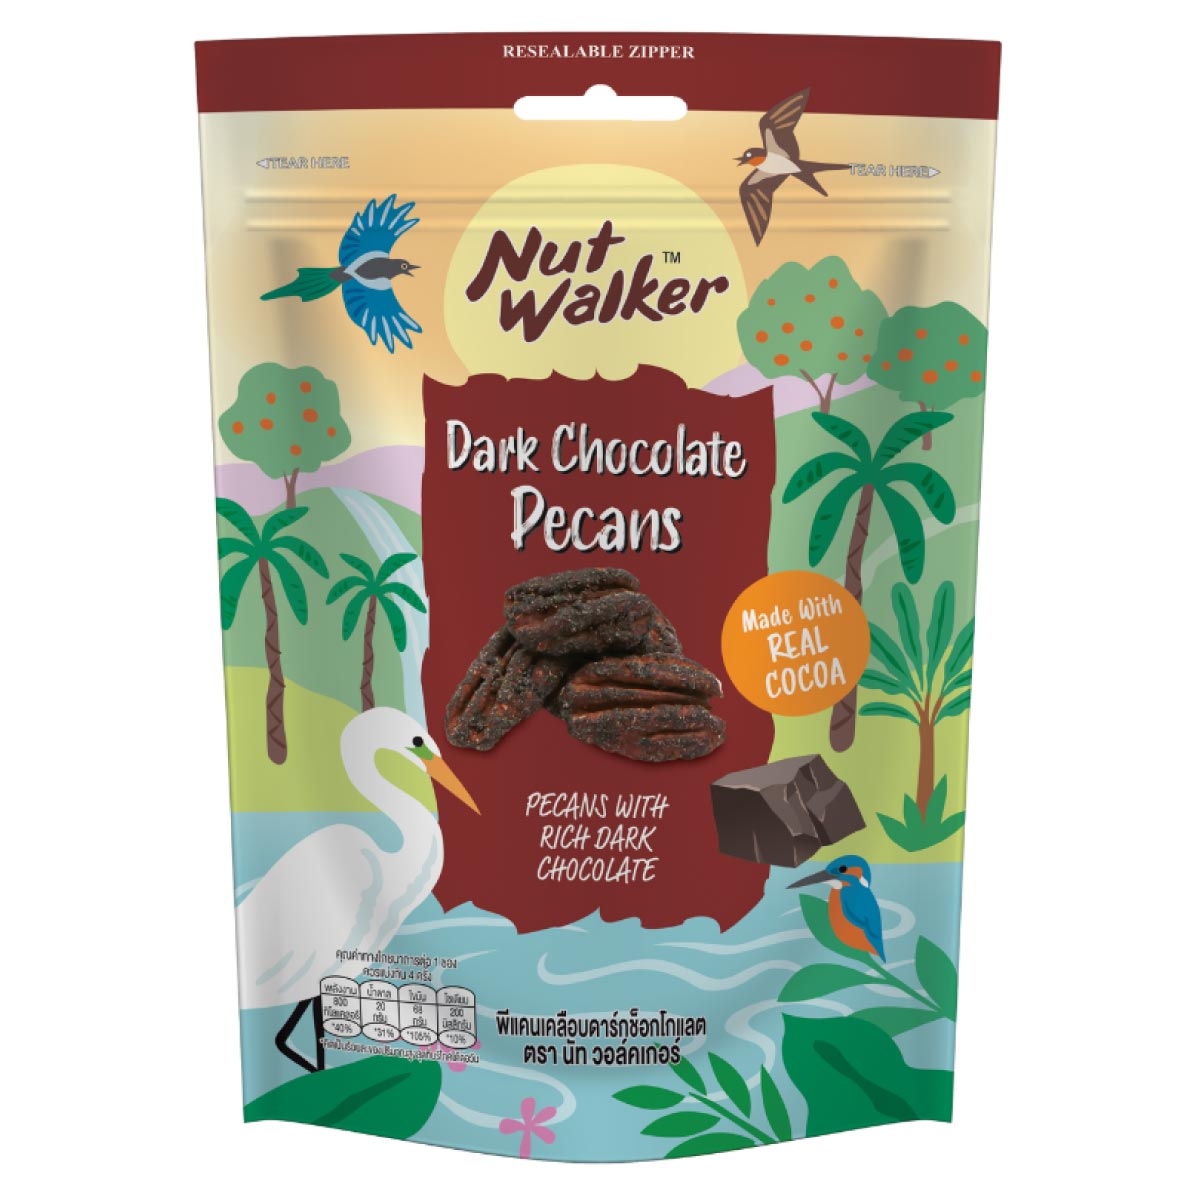 NUTW-Pecans-with-dark-chocolate-120g-1200x1200